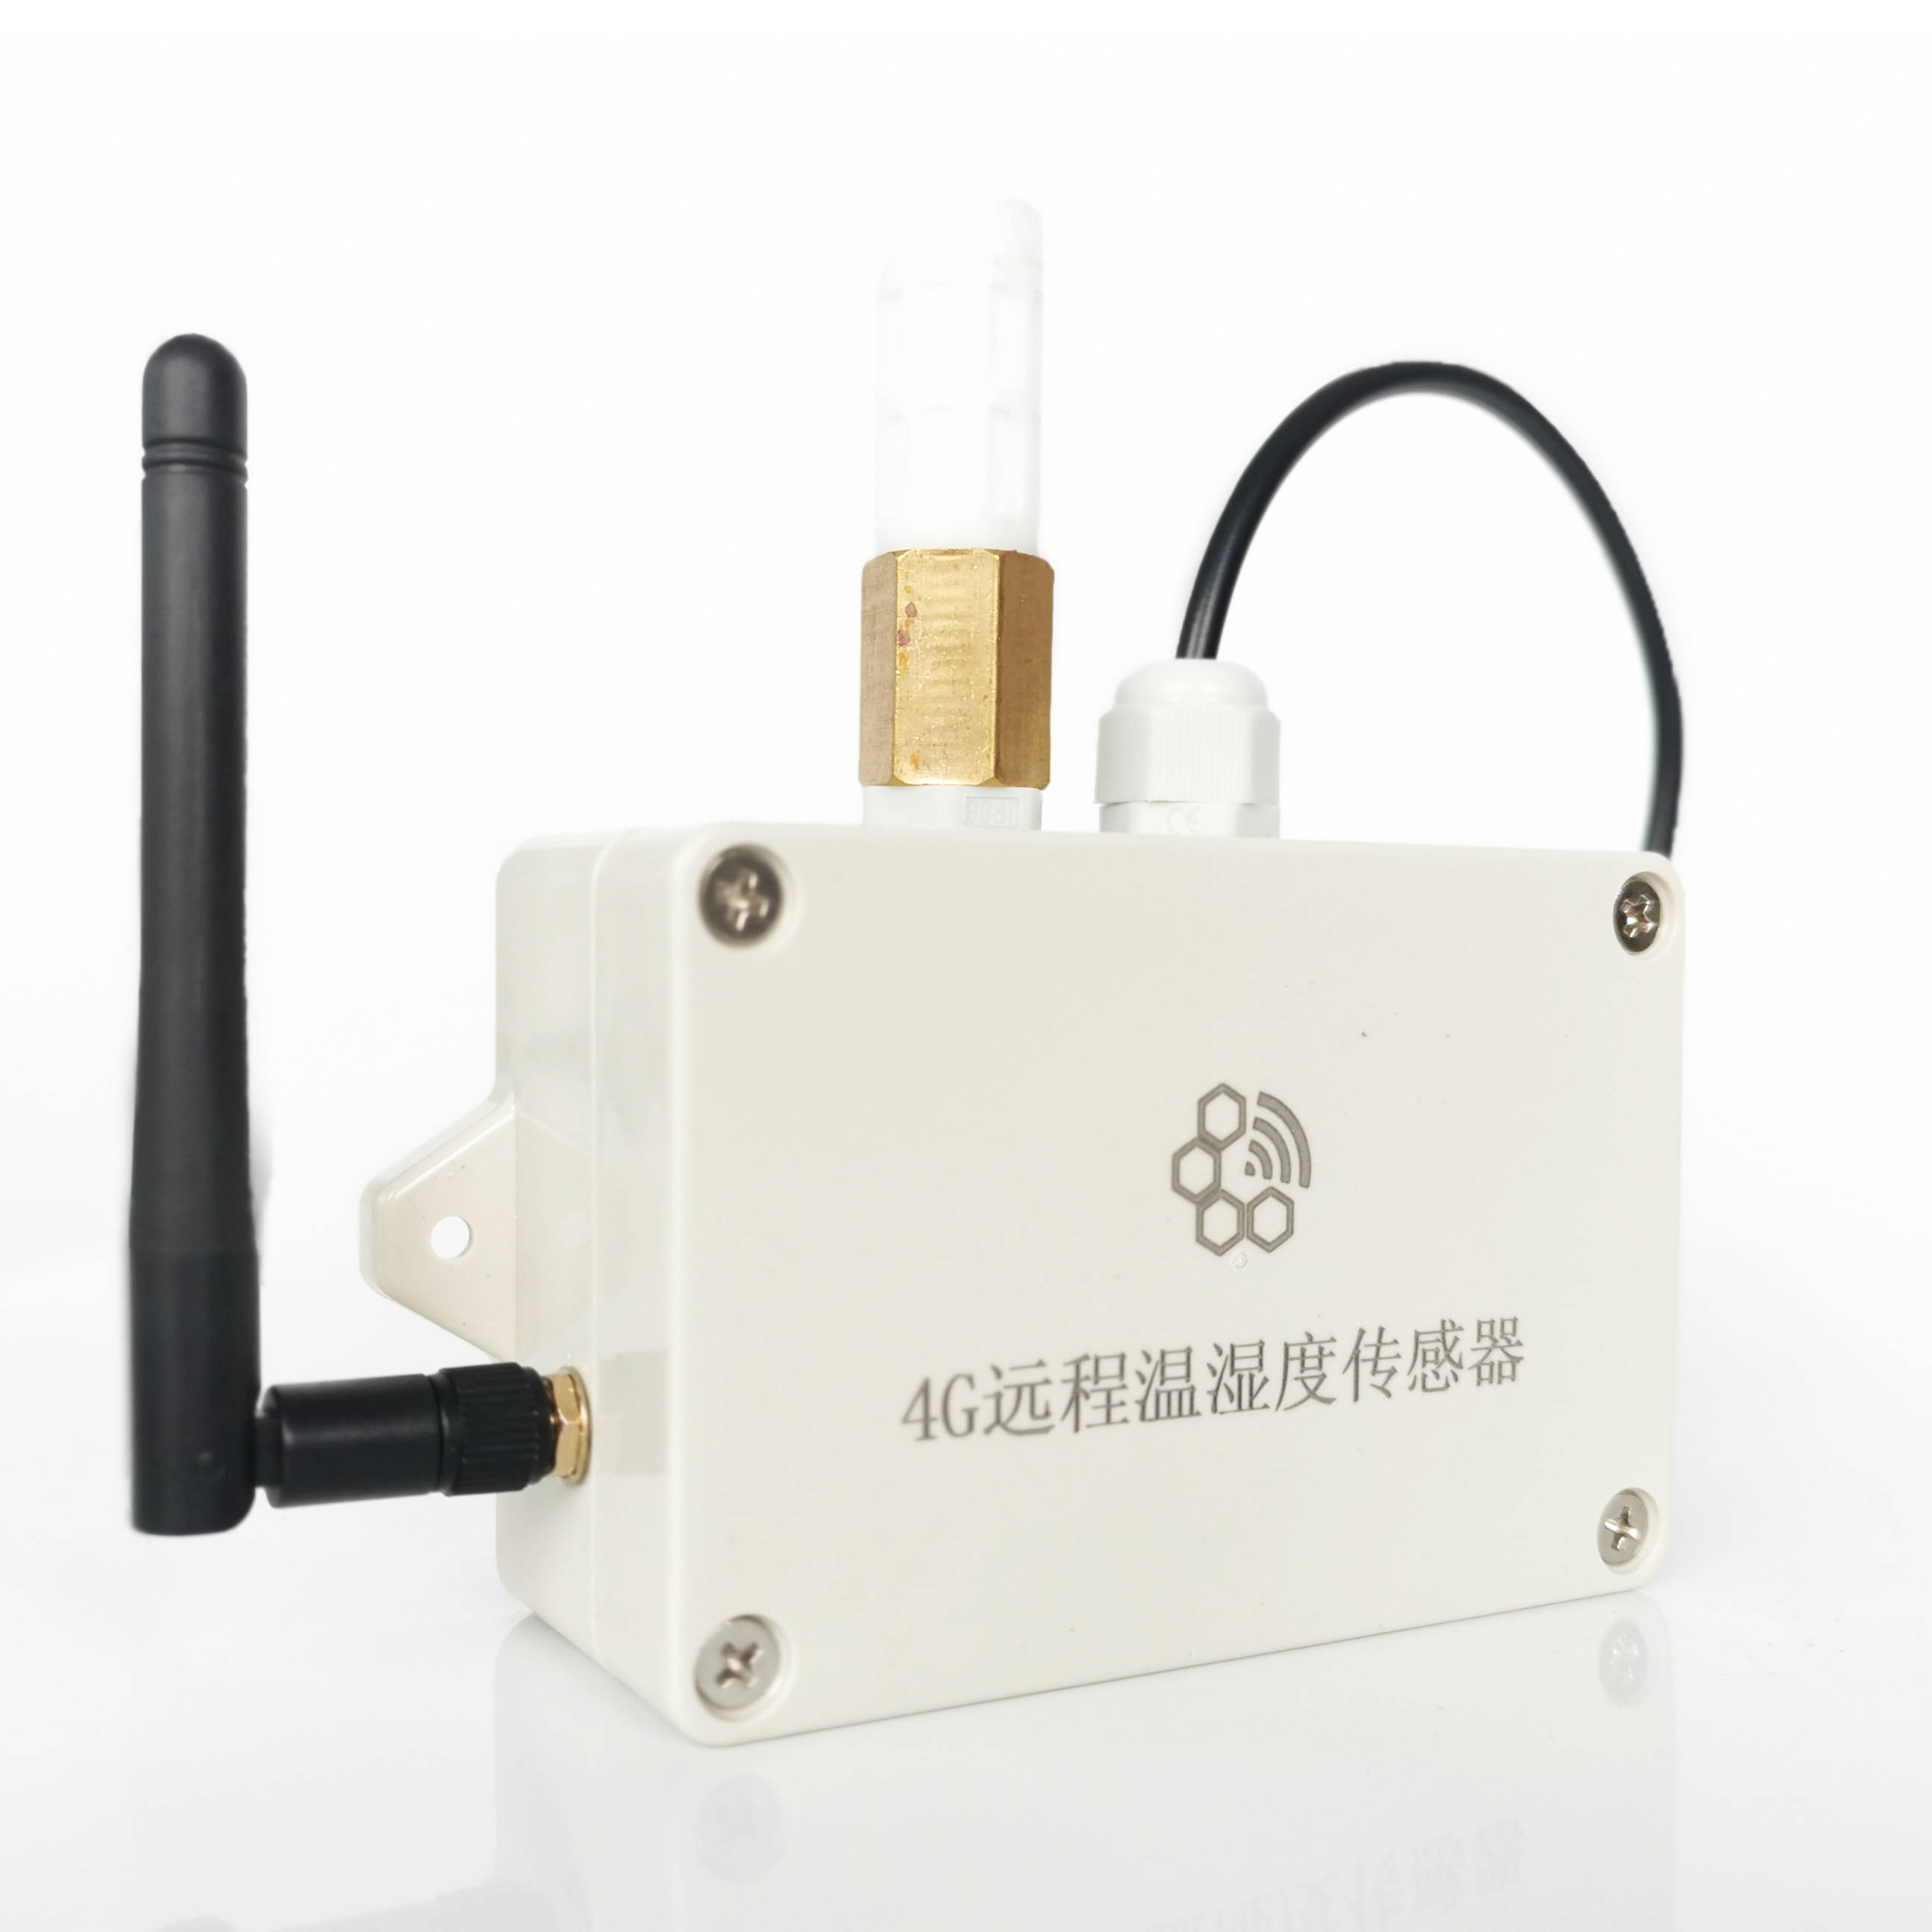 4G远程温湿度传感器在疫苗、医药冷链运输中的应用